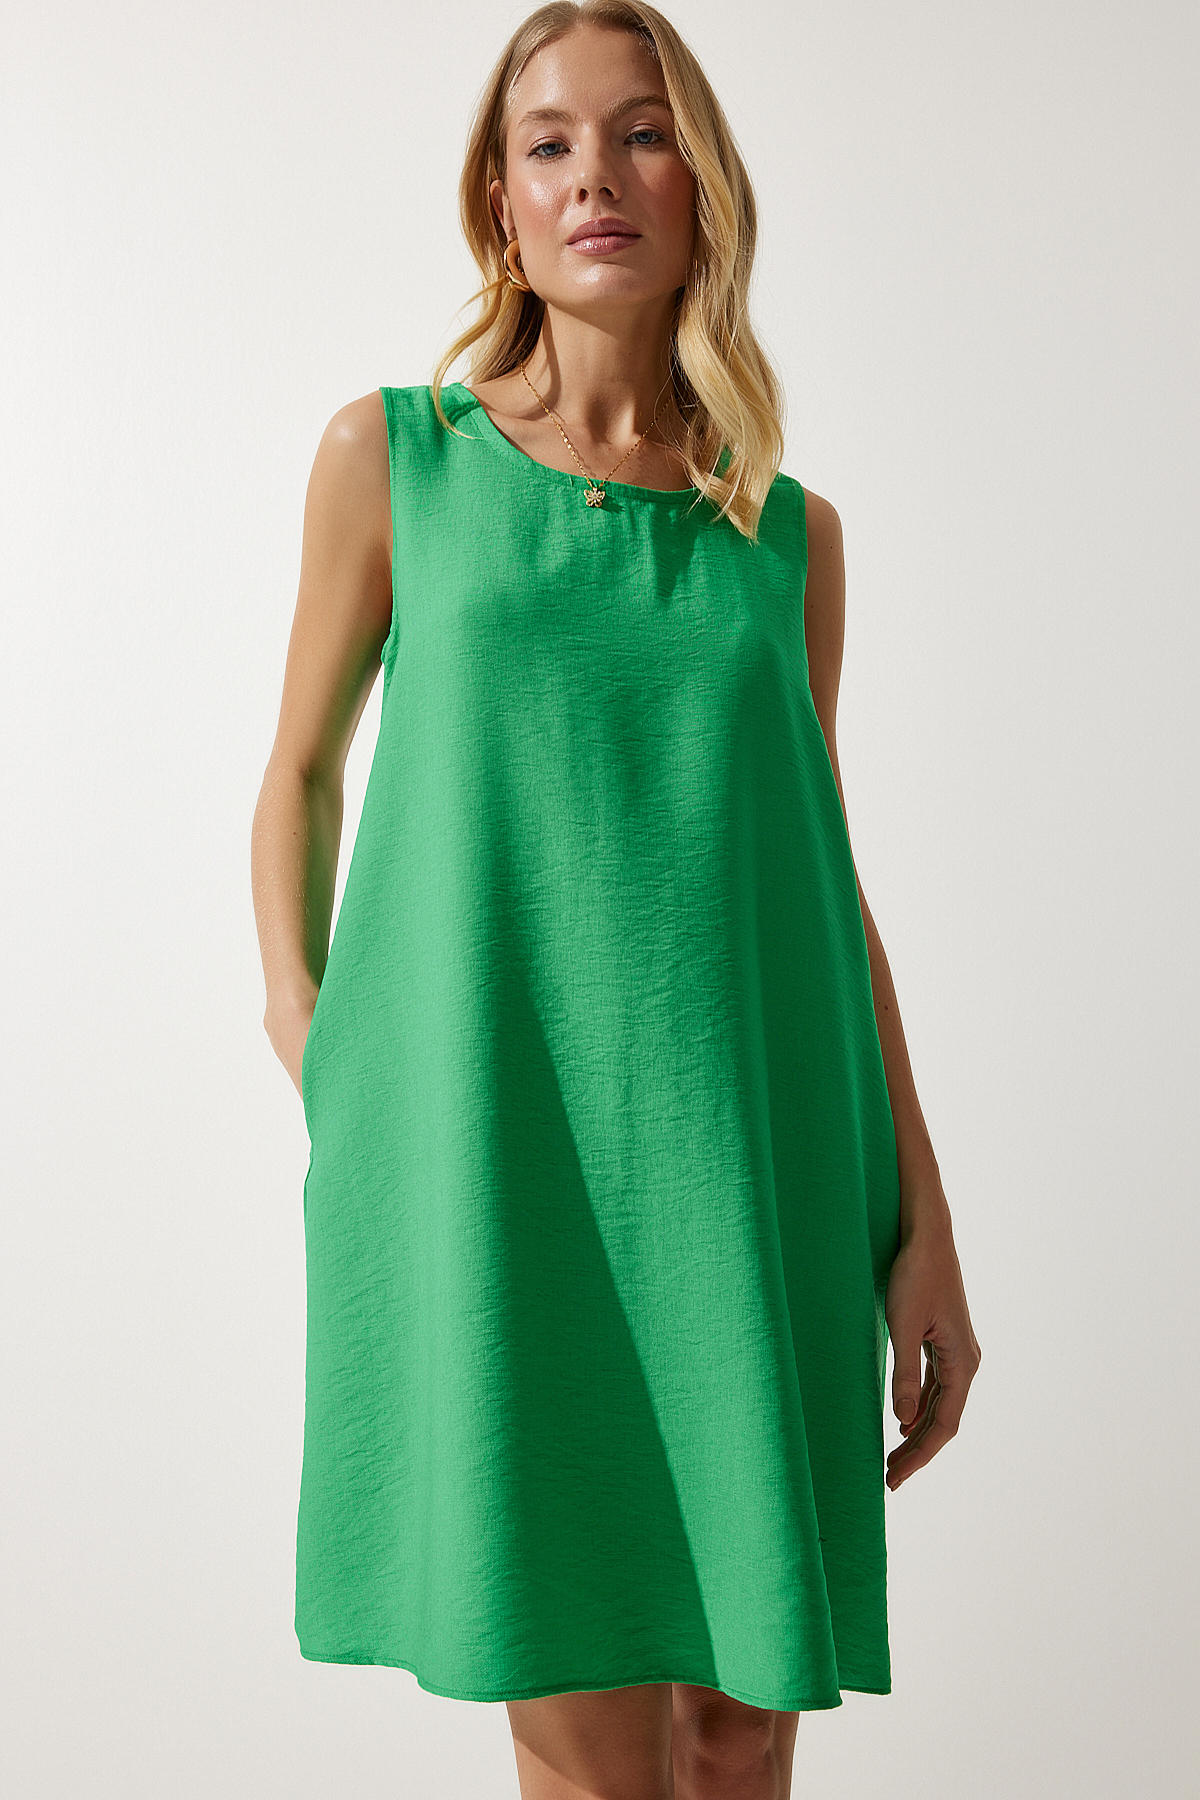 Levně Happiness İstanbul Women's Dark Green Sleeveless Linen Viscose A-Line Dress